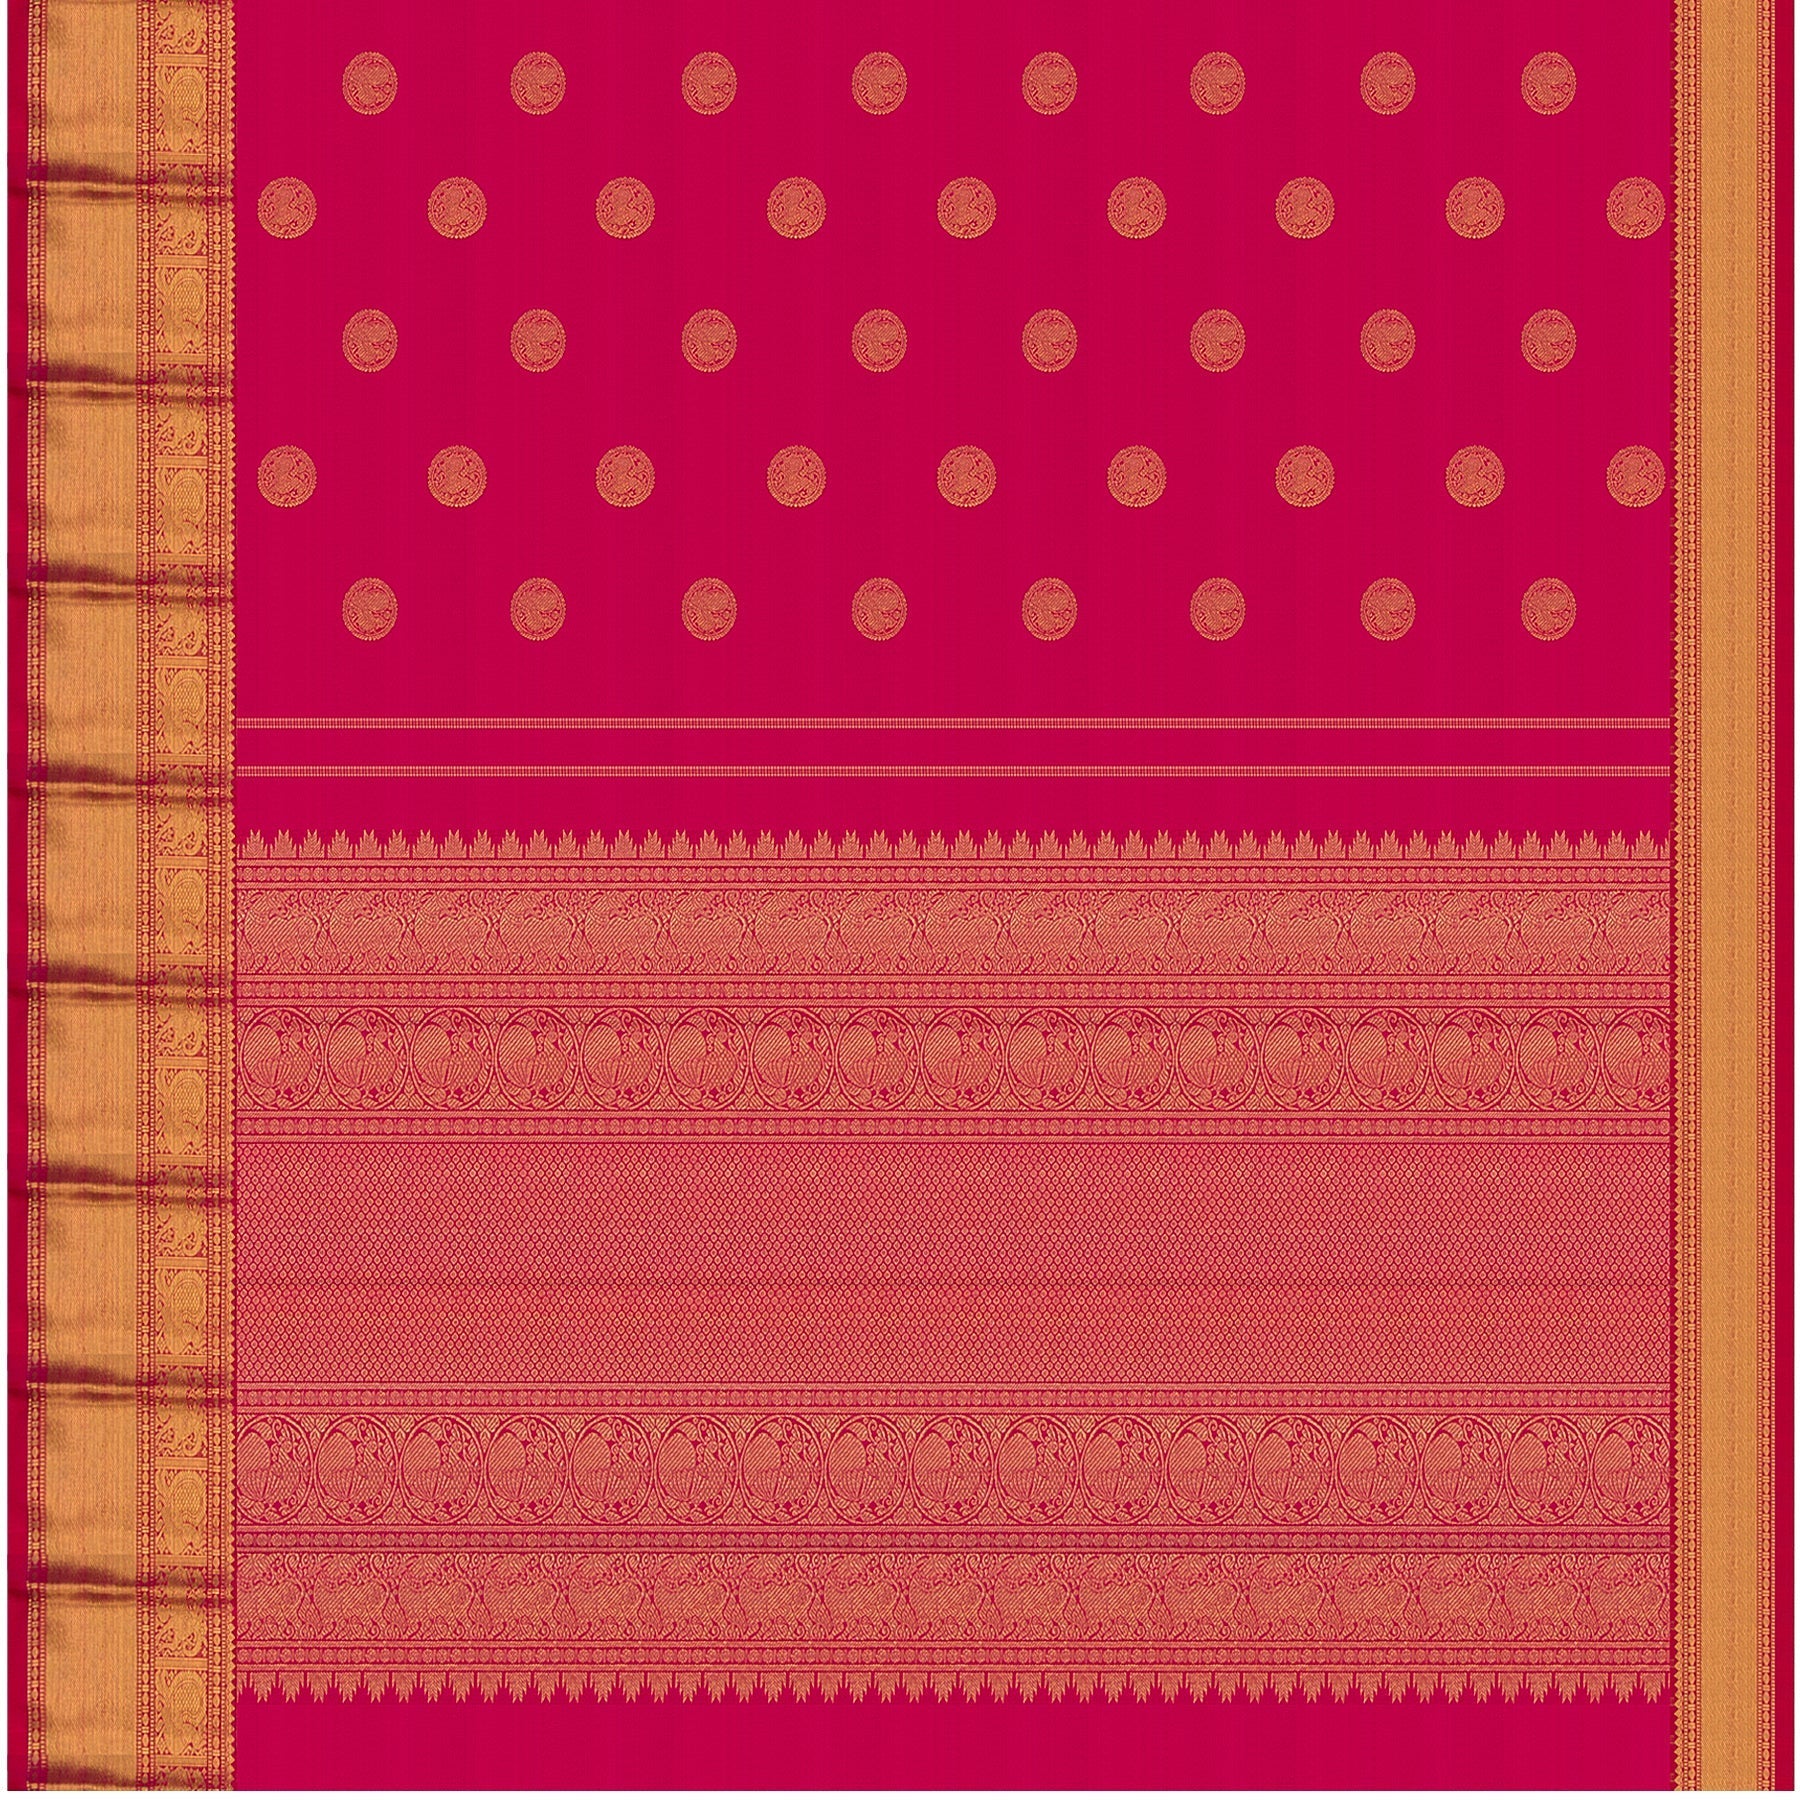 Kanakavalli Kanjivaram Silk Sari 21-609-HS001-06742 - Full View